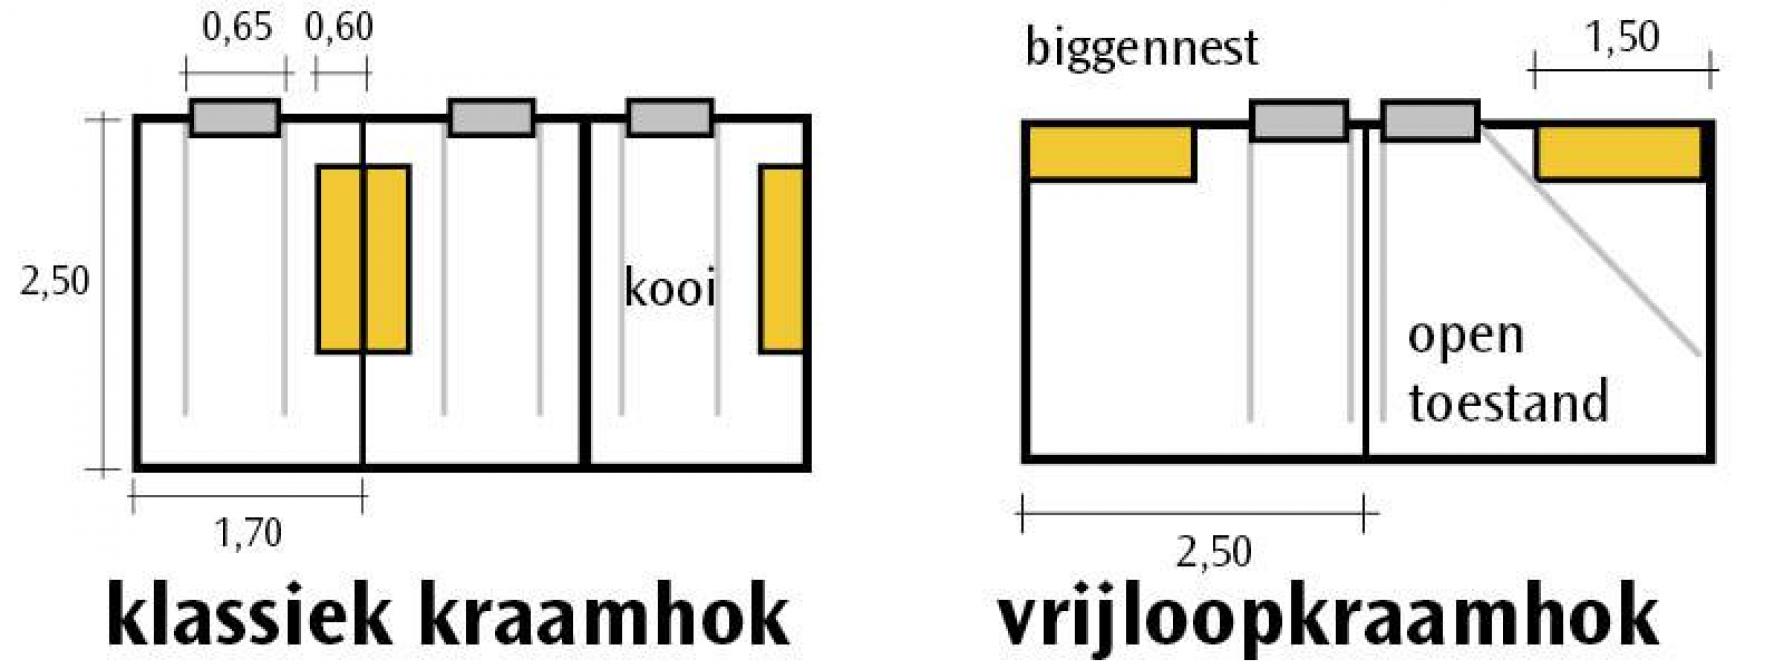 Figuur 1: Mogelijke ombouw van 3 kraamhokken naar 2 vrijloopkraamhokken (Bron: naar IFIP-Massabie, 2009).